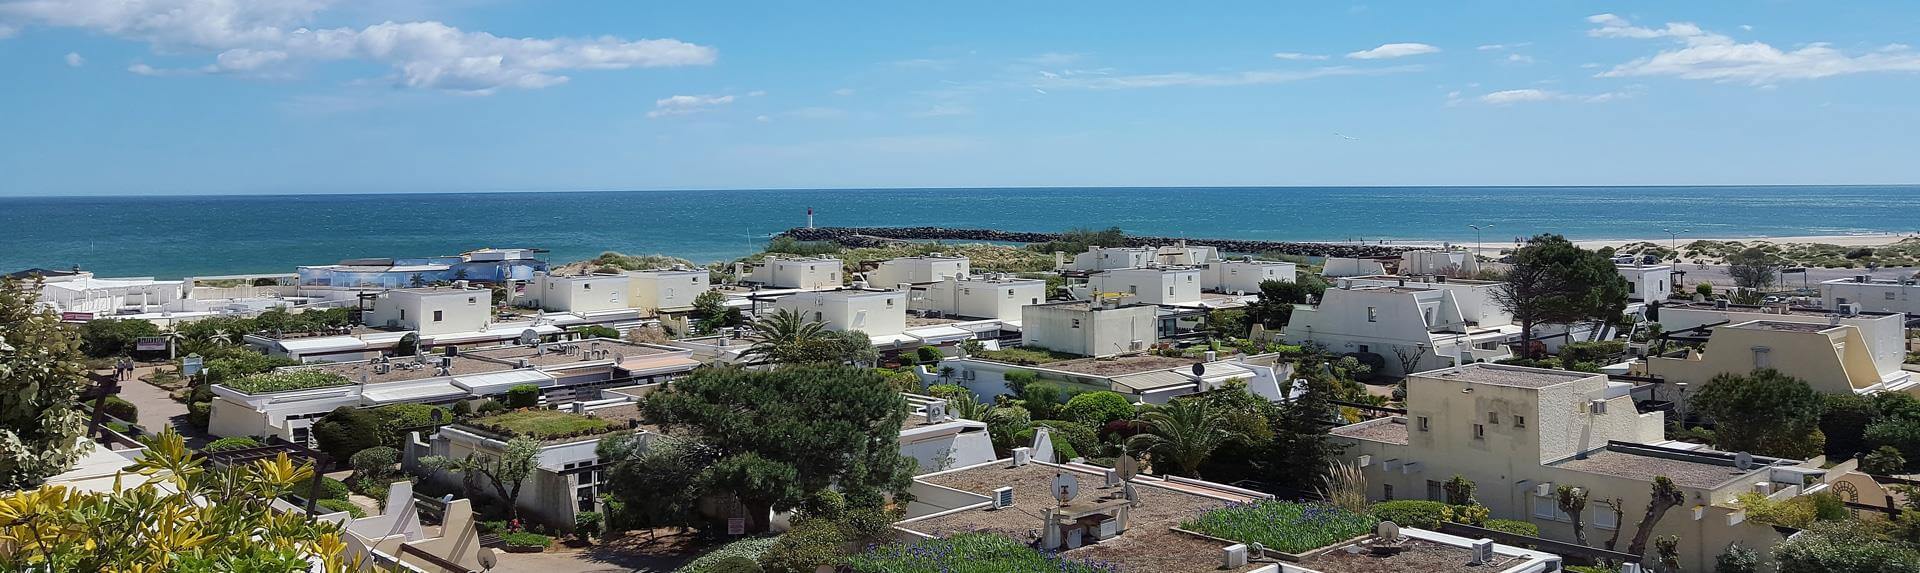 Studios, appartements et duplex avec vue sur mer - résidence Port Nature : location naturisme au Cap d'Agde